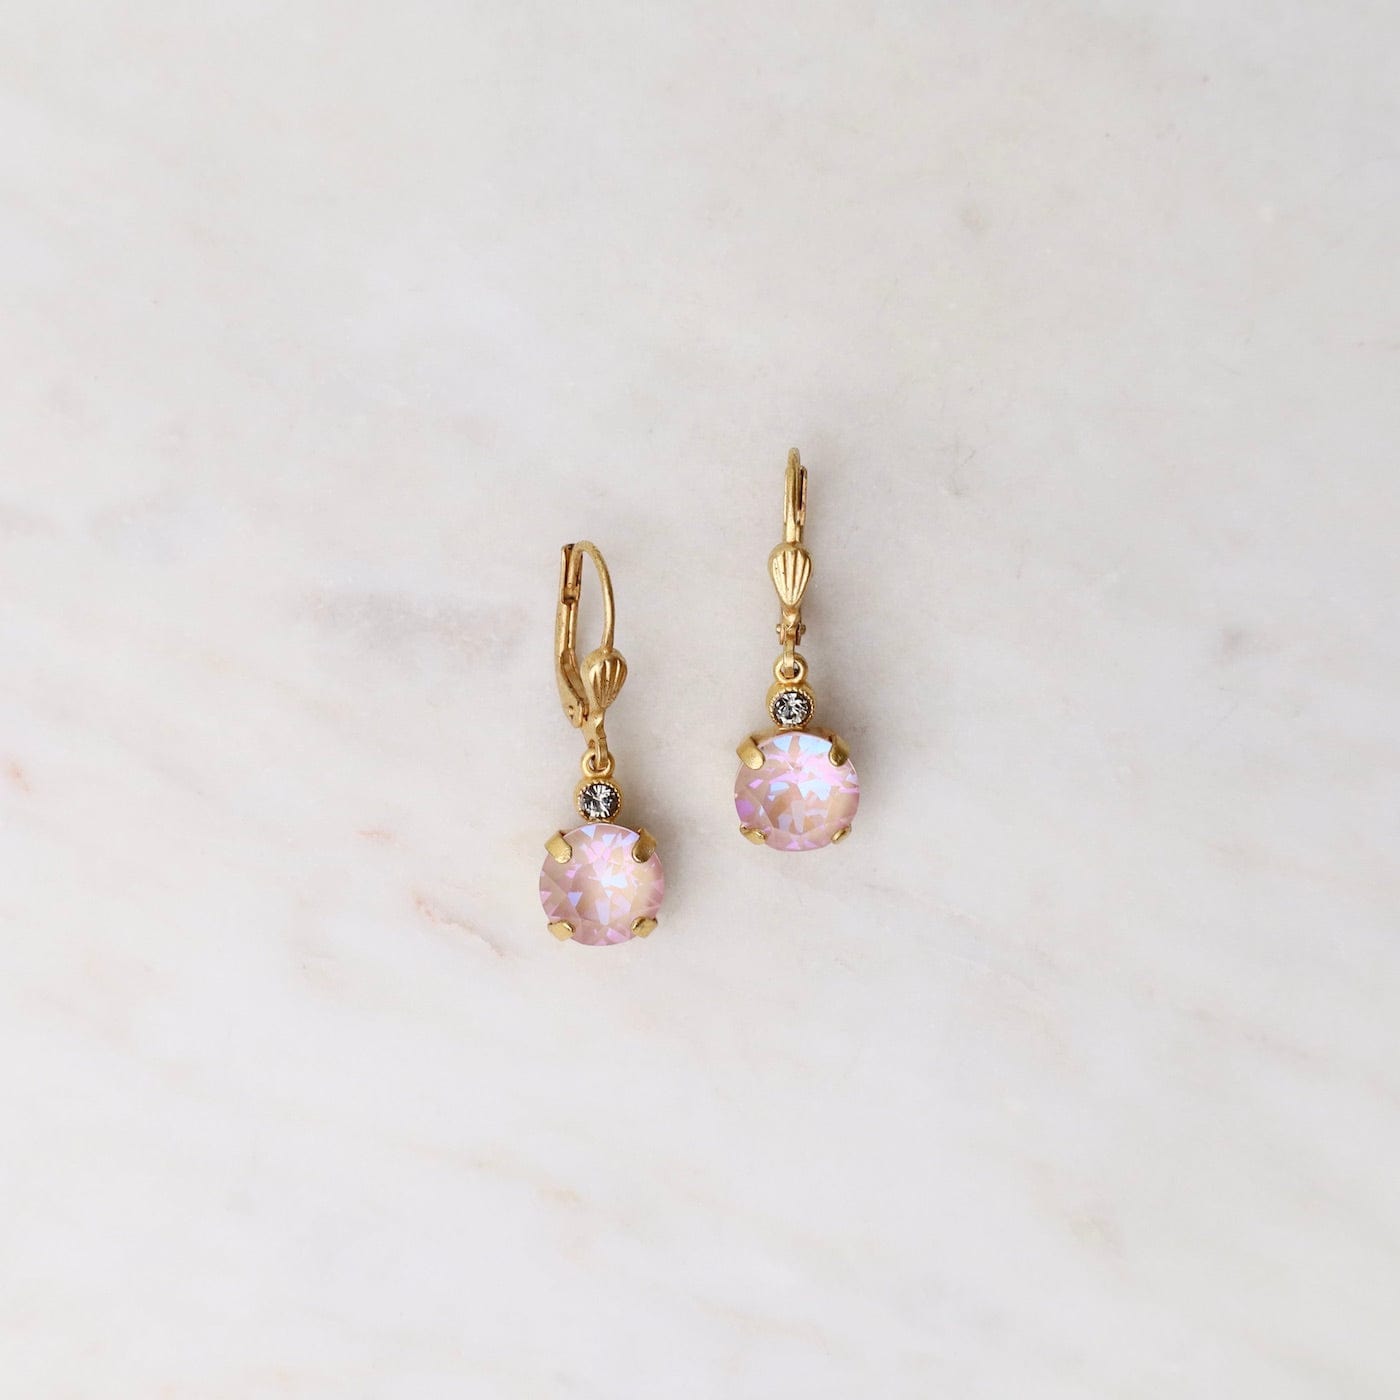 EAR-JM Small Dusty Pink Drop Earrings - Gold Plate